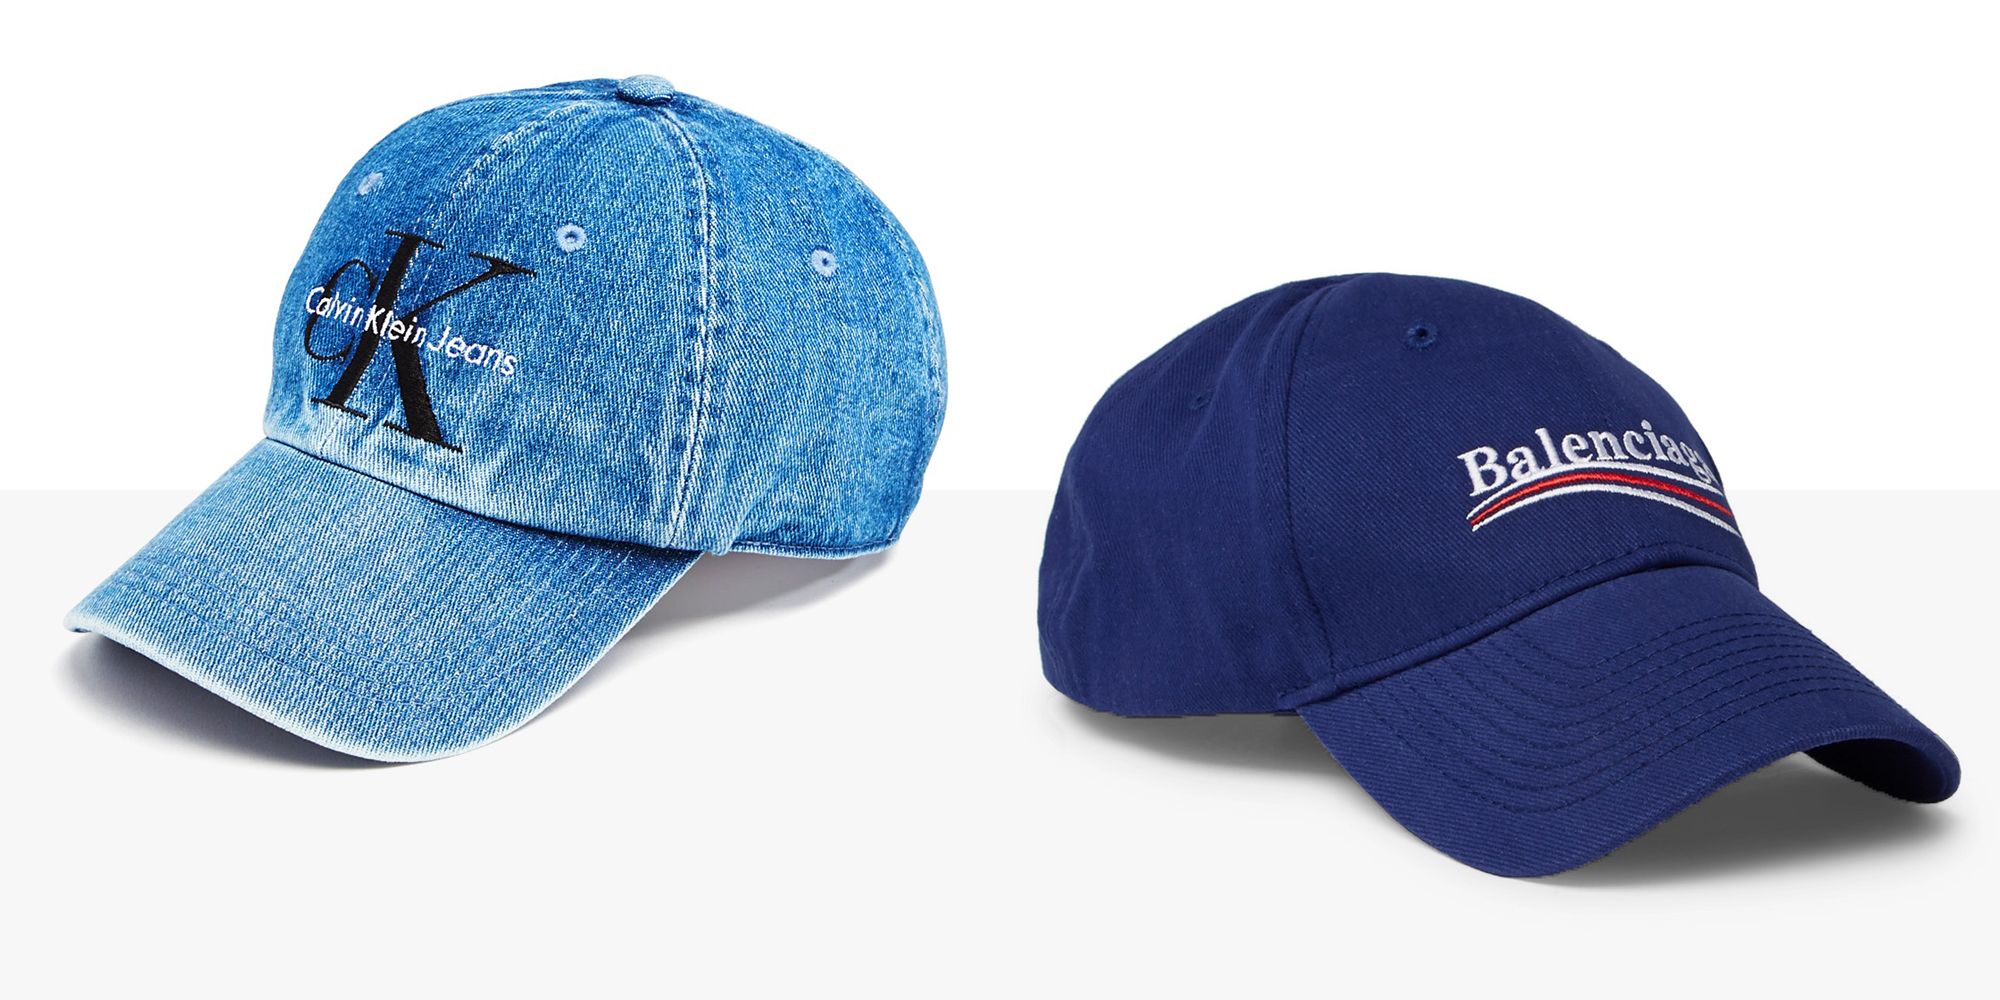 MLB - Hats & Caps, Hats